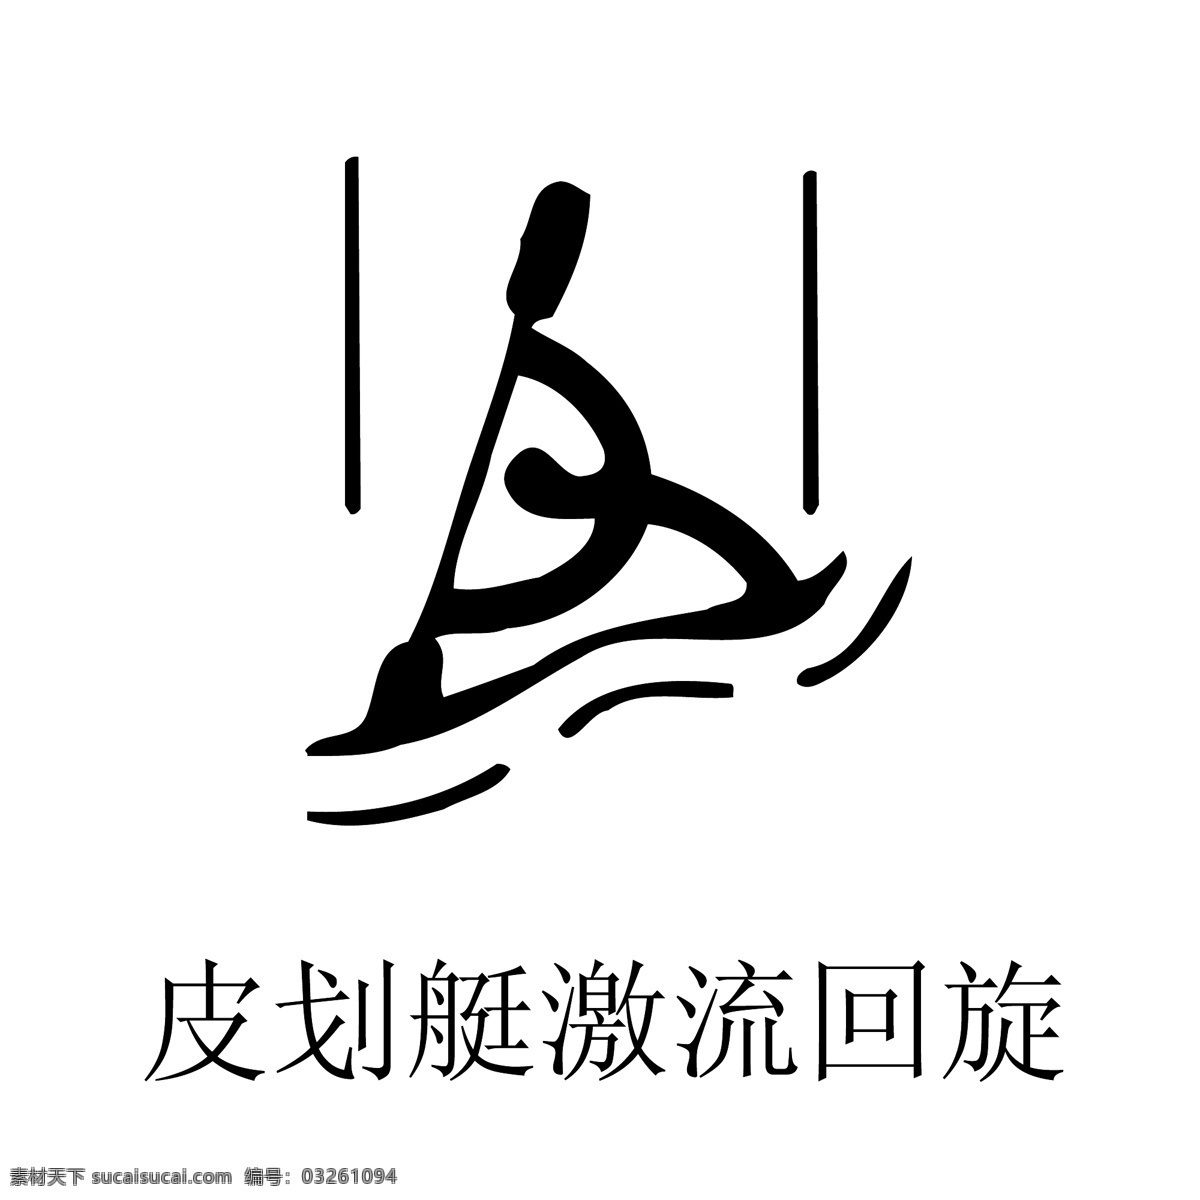 2008 北京 奥运 中国 印 系列 体育 项目 矢量 图标 矢量图标 中国印 体育项目图标 yangjianwei120 其他矢量图